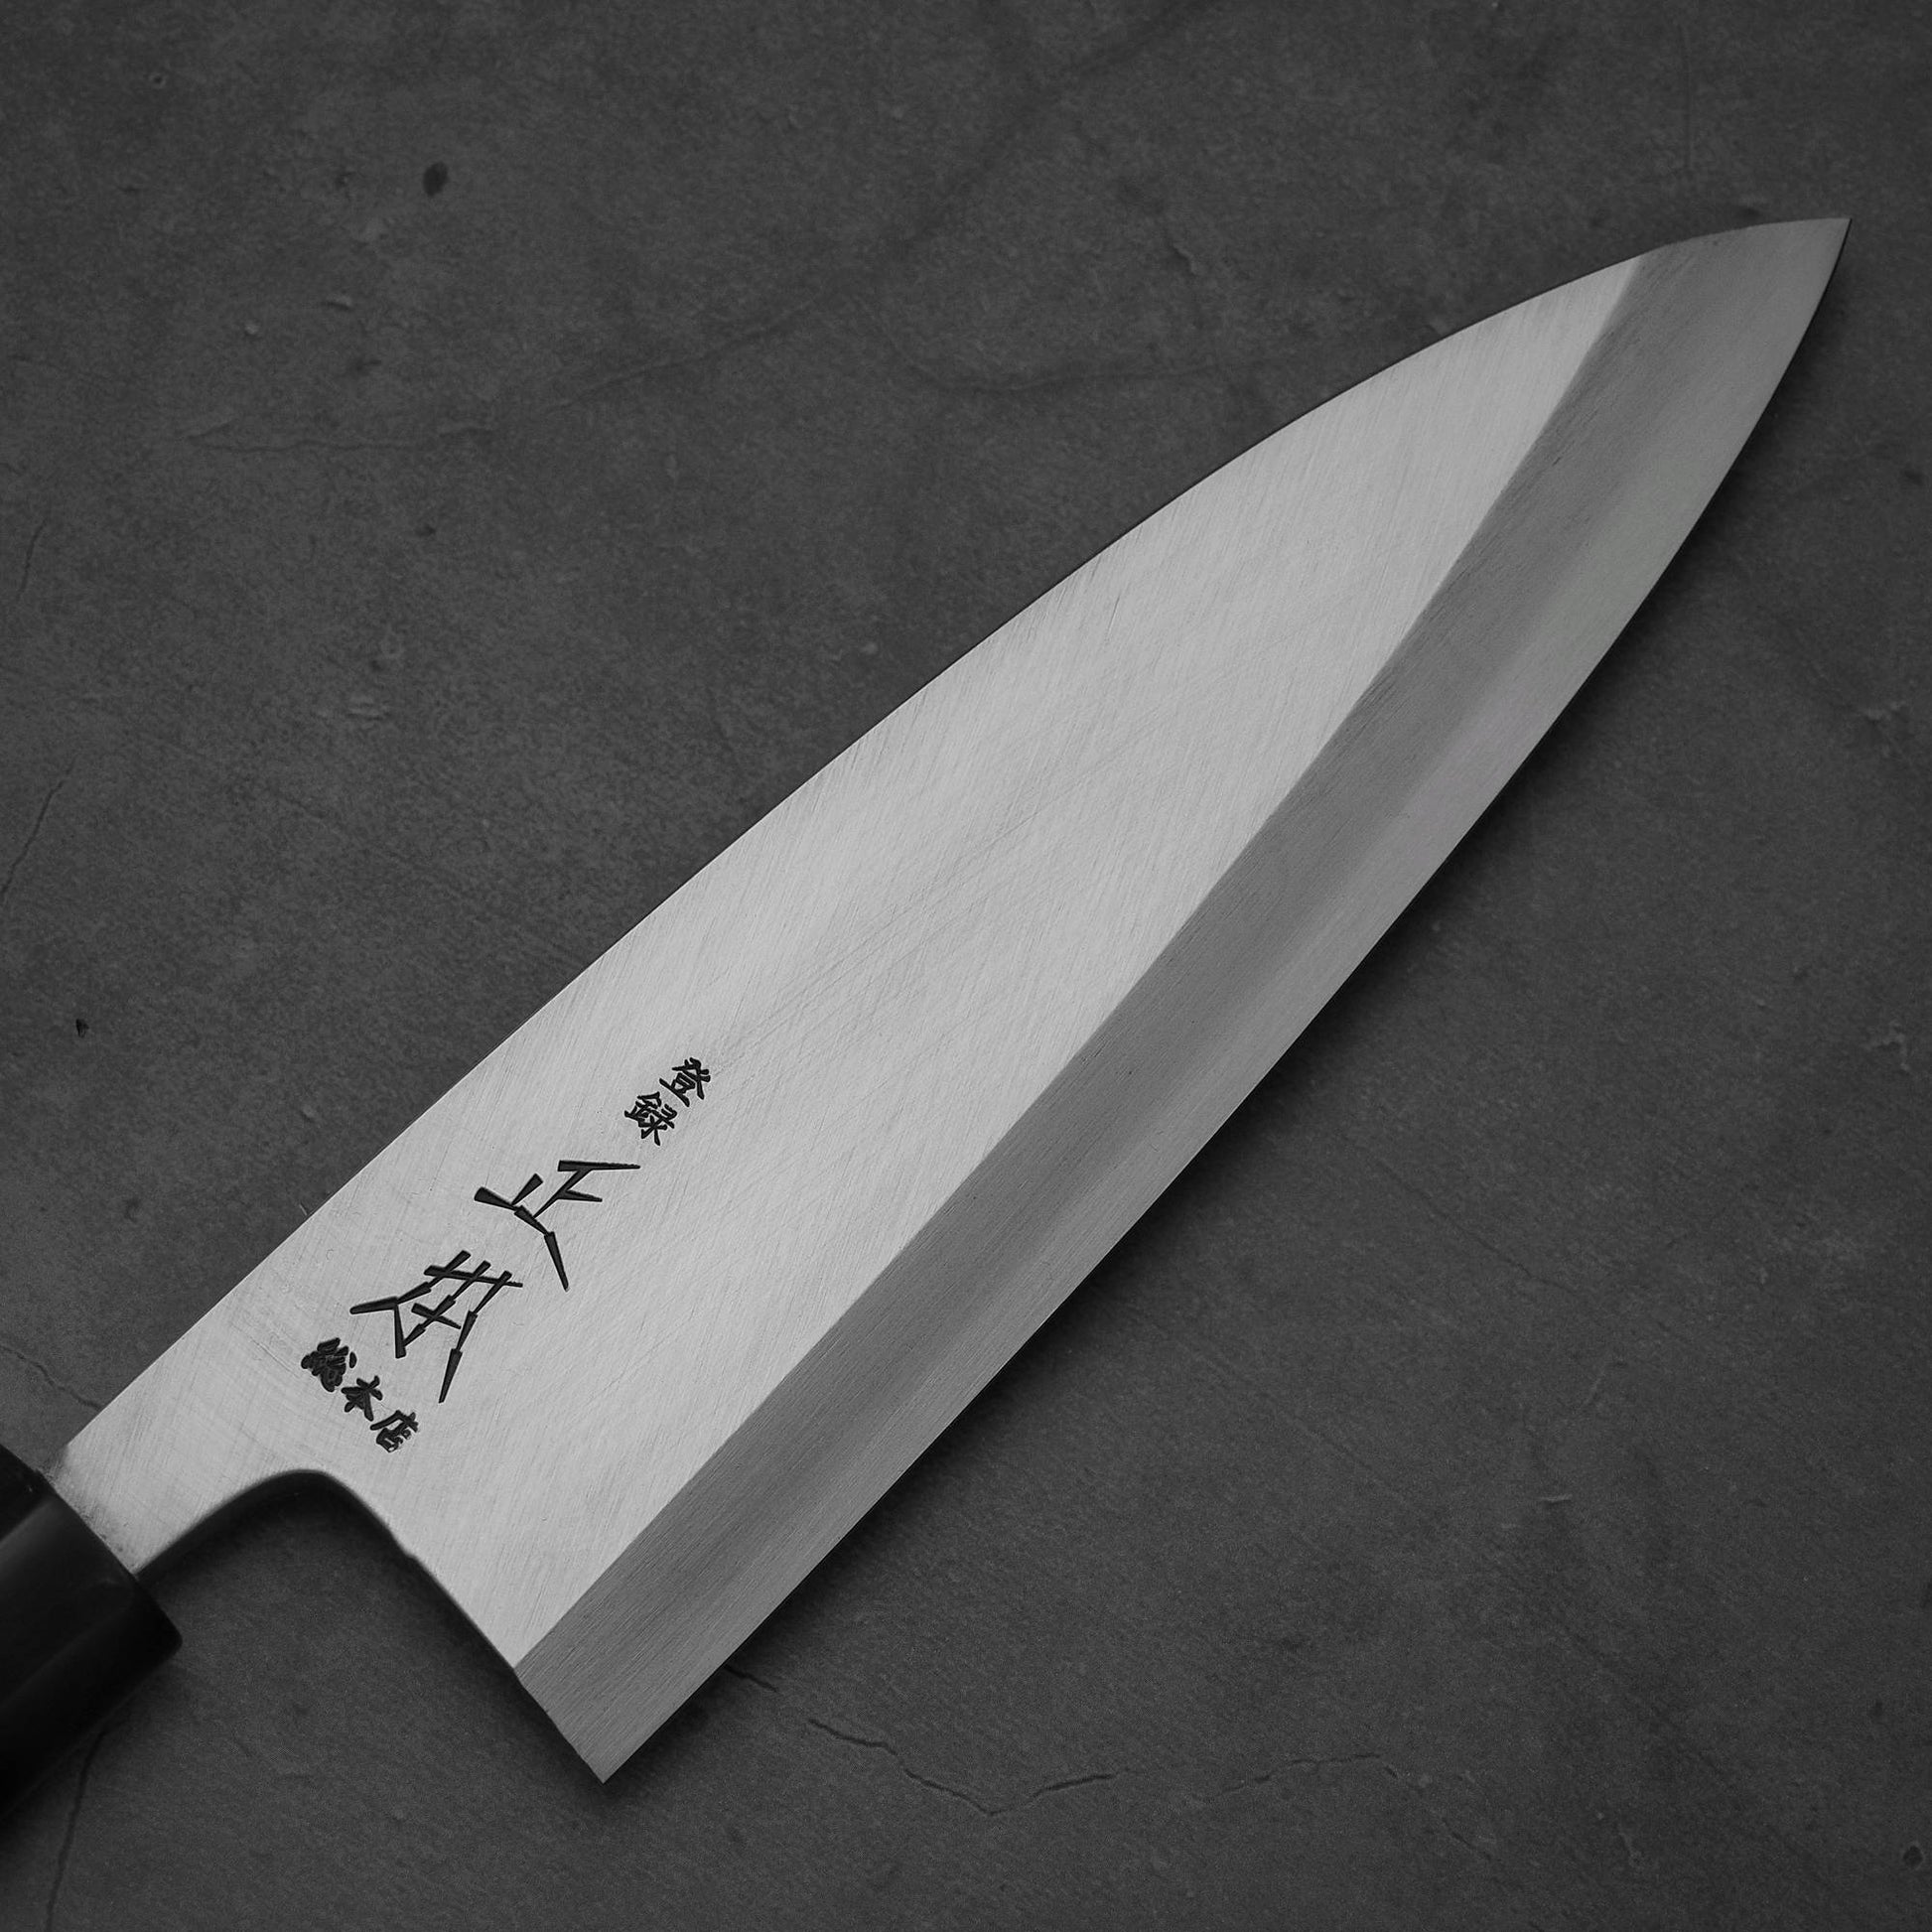 Close up view of the blade of Masamoto KS shirogami#2 deba knife